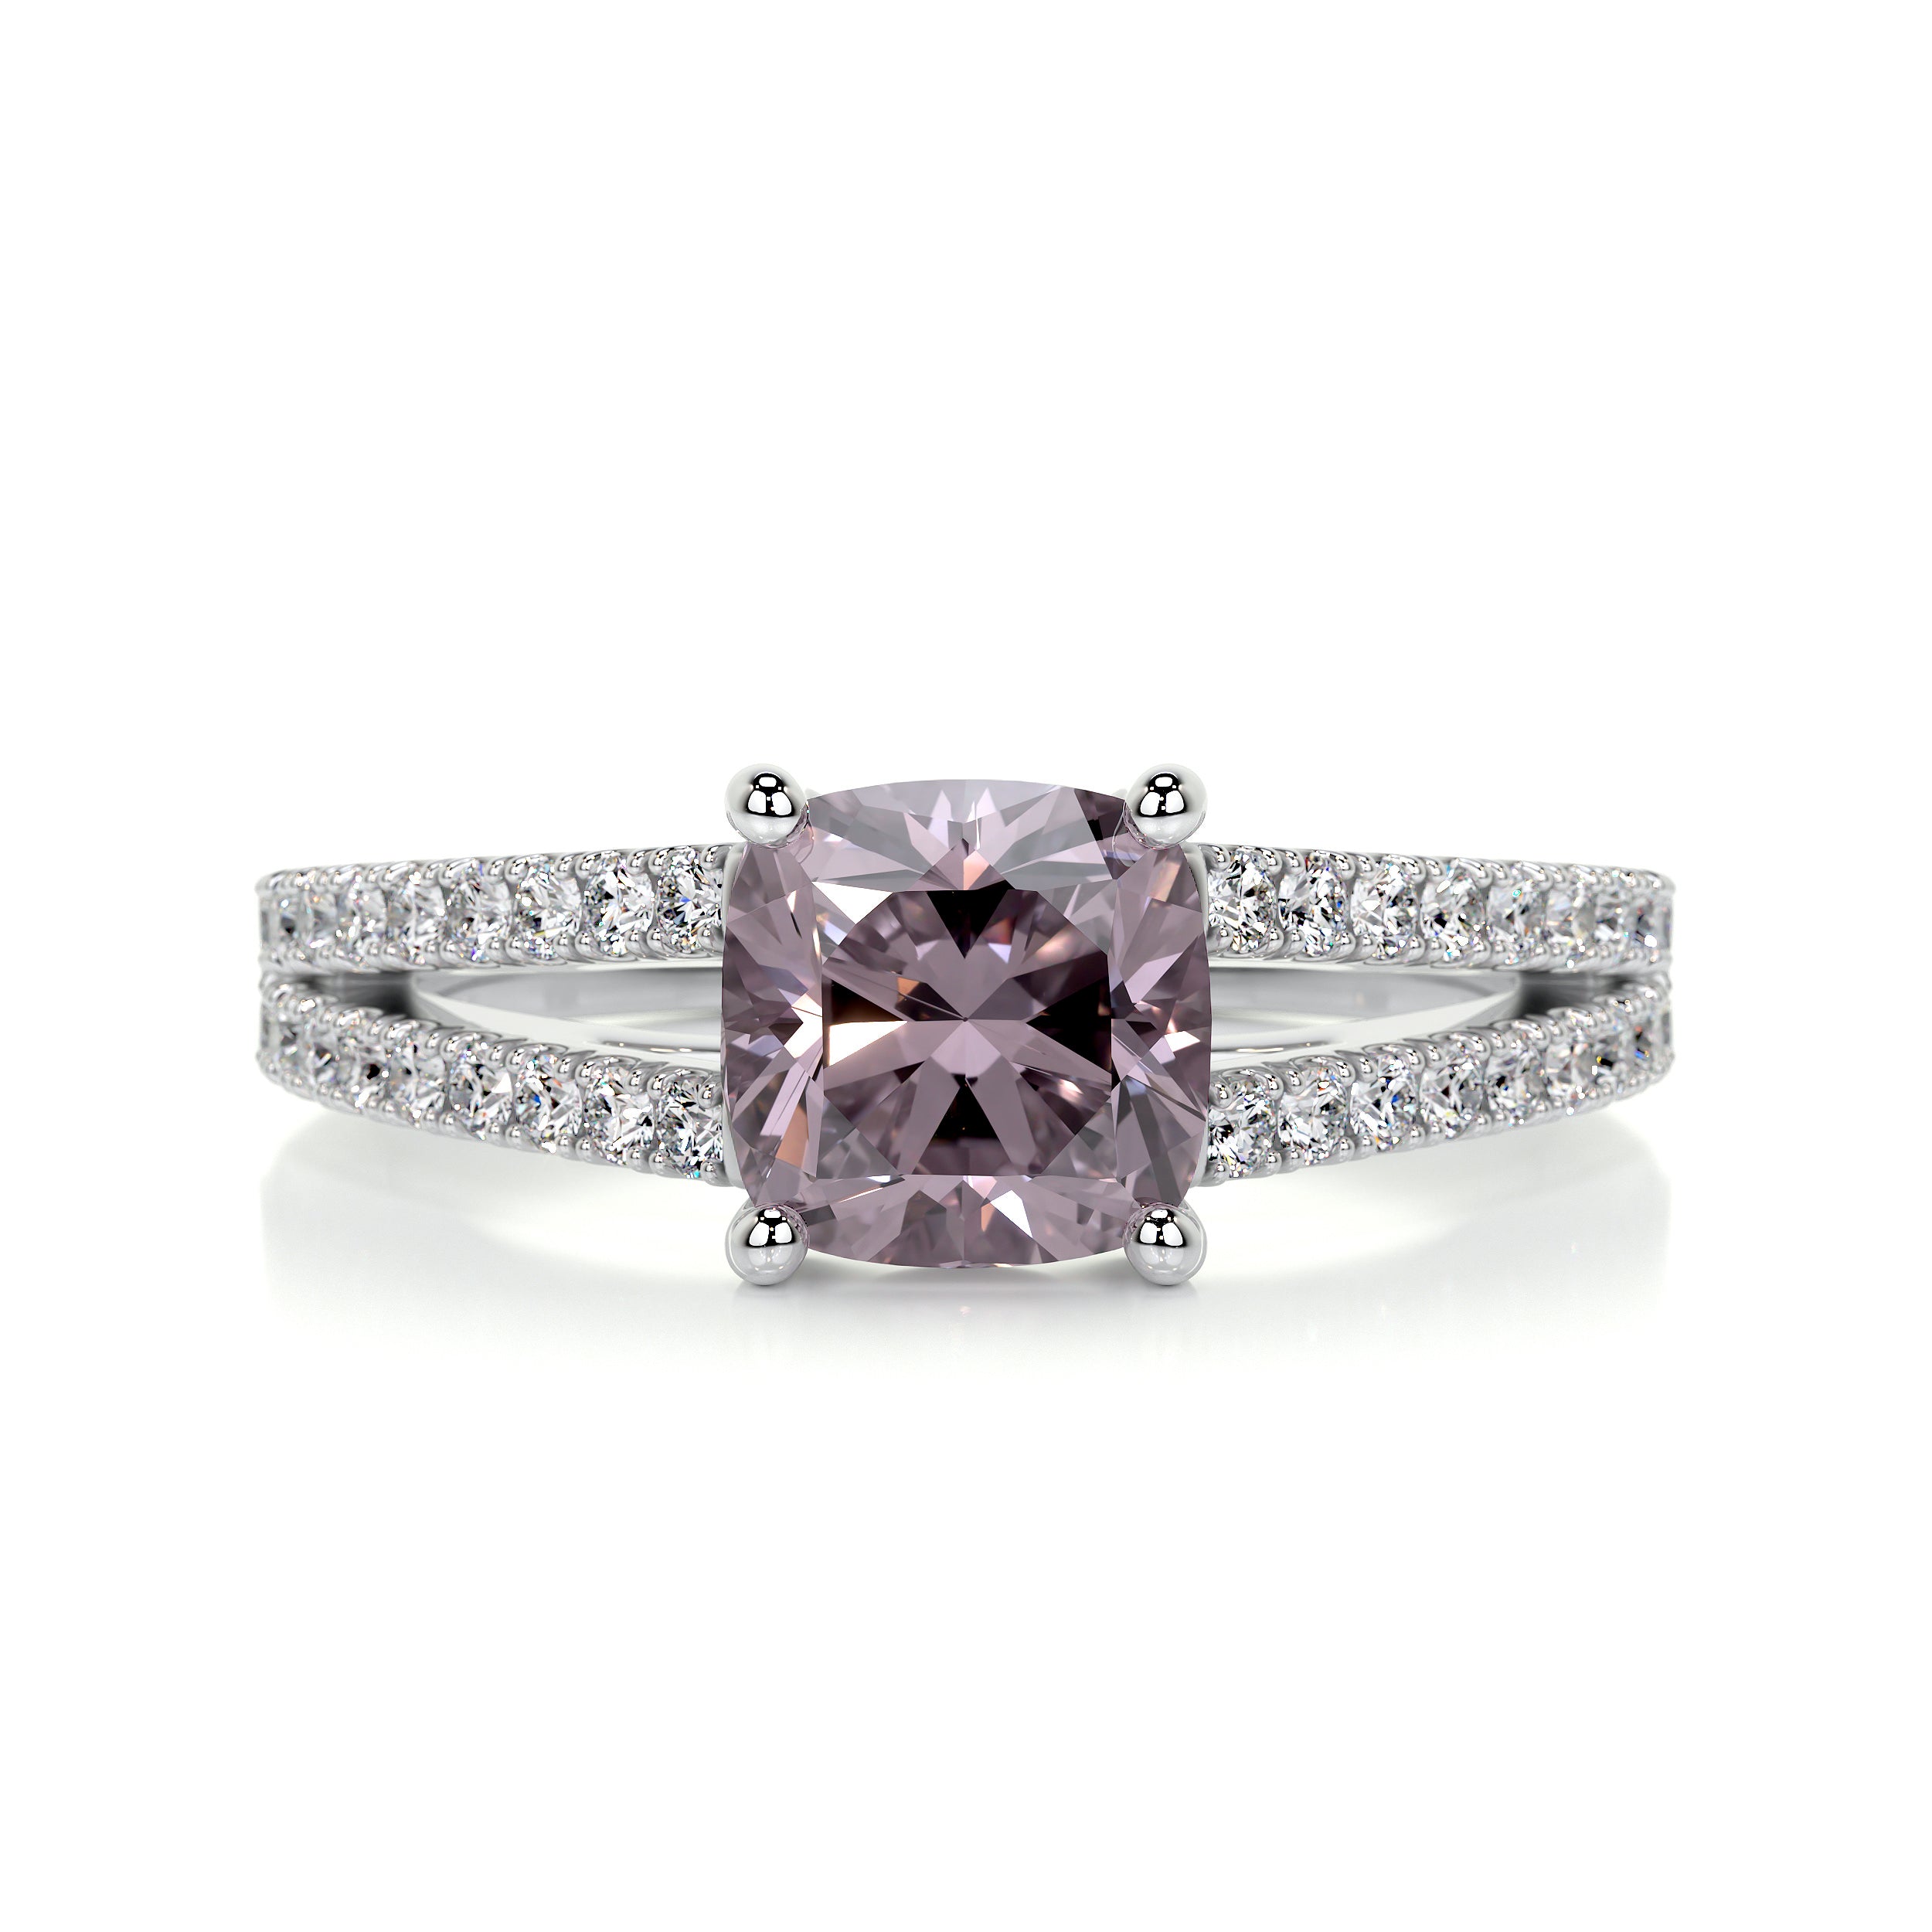 Sadie Gemstone & Diamonds Ring   (2.05 Carat) -18K White Gold